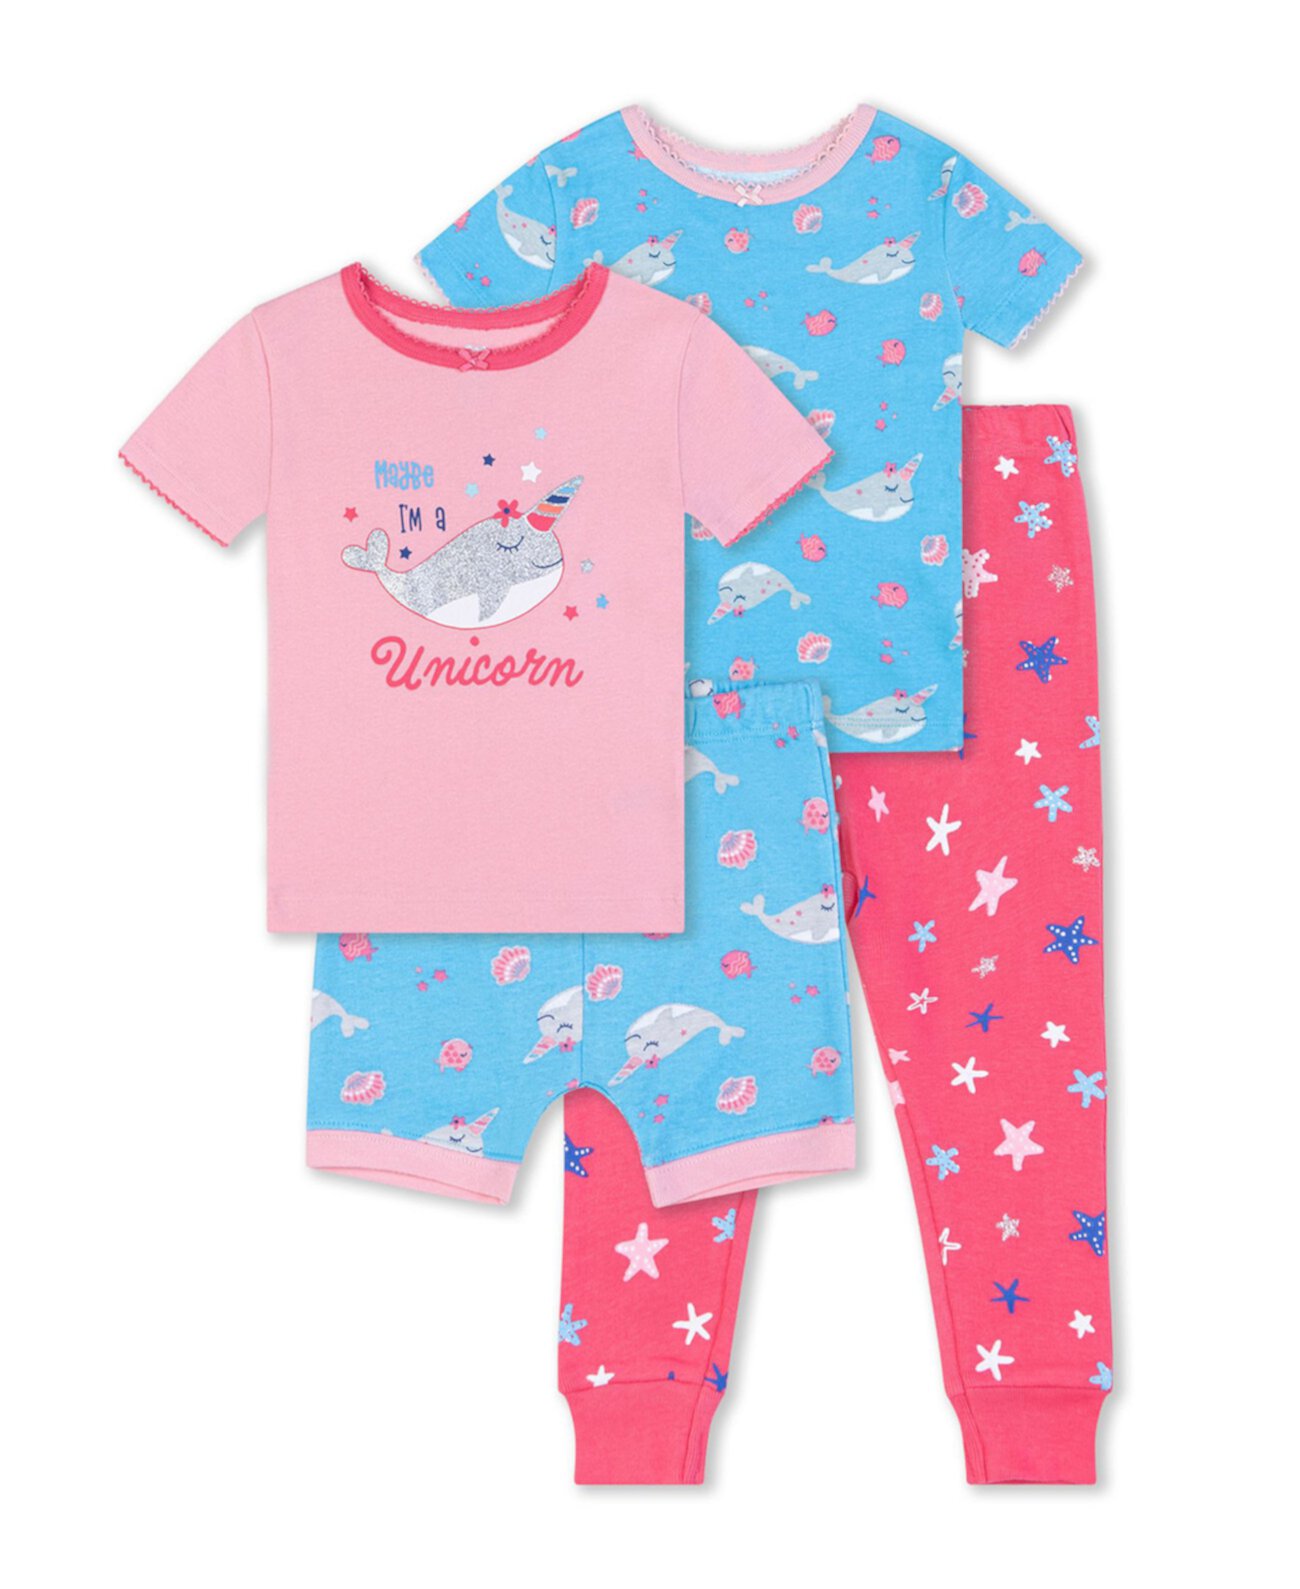 Одежда для сна с китами для маленьких девочек, комплект из 4 предметов Koala baby